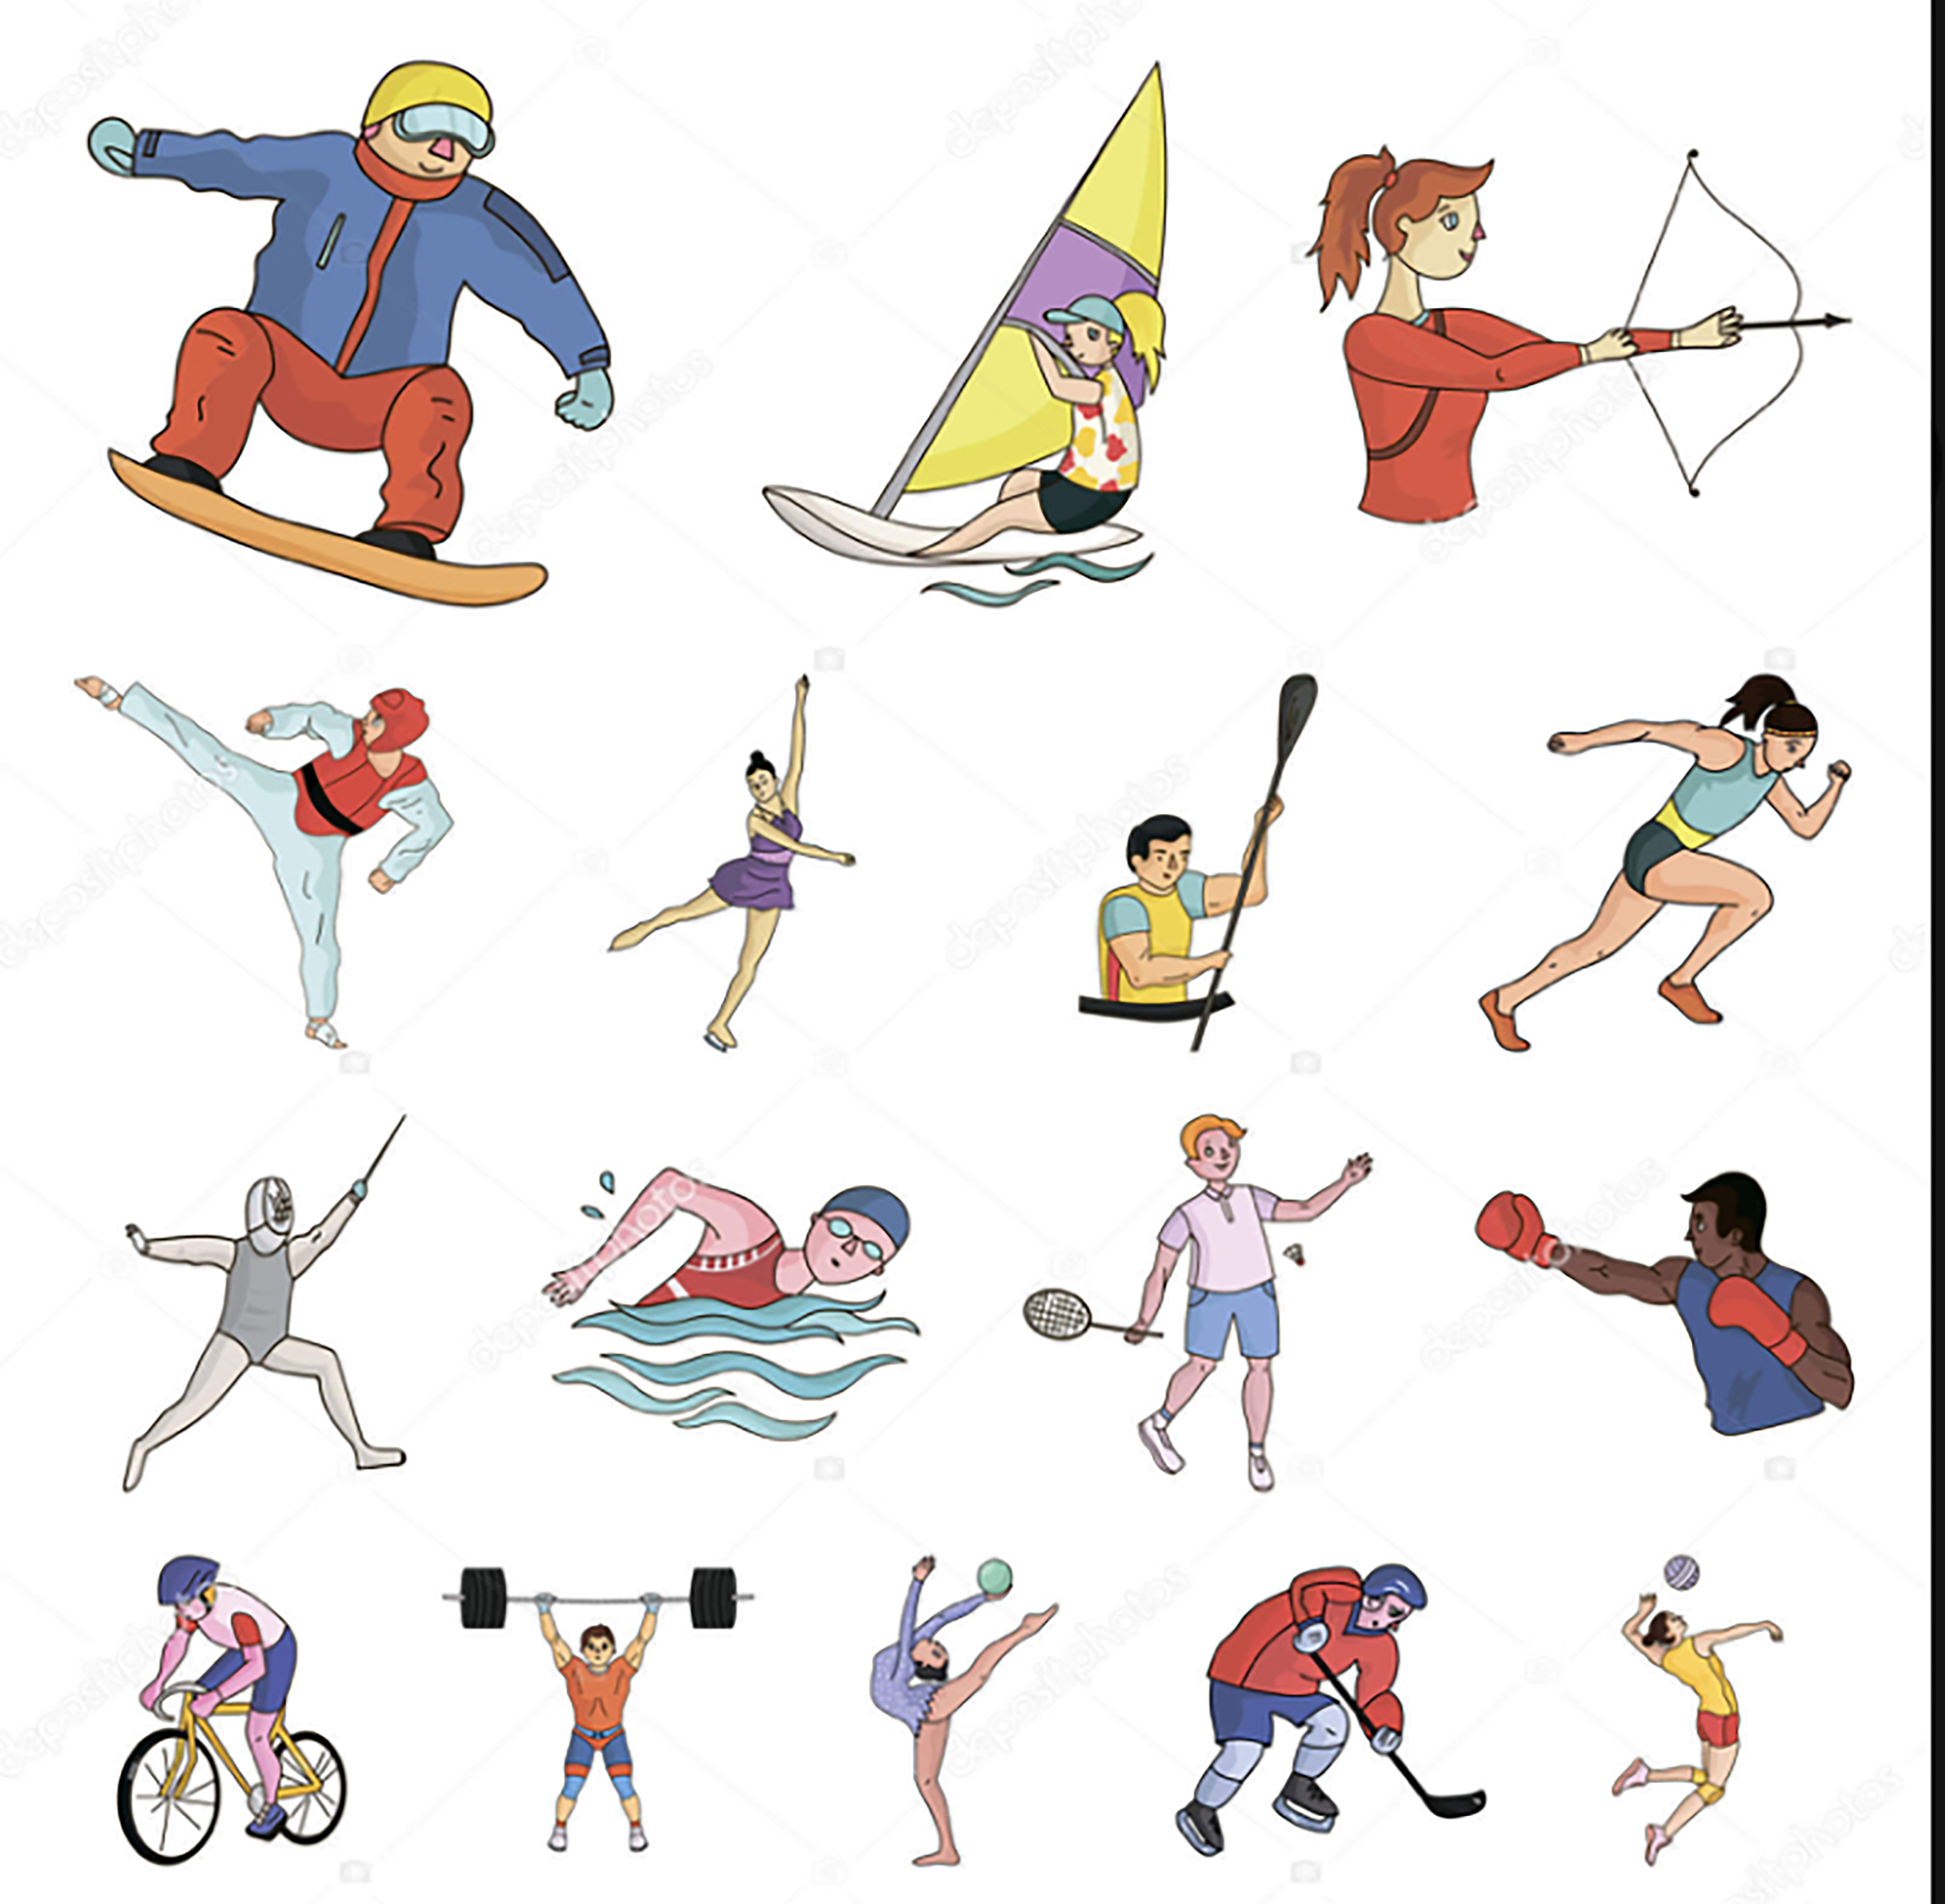 Different kinds of sport. Различные виды спорта рисунок. Иллюстрации с разными видами спорта. Летние виды спорта рисунки. Разные виды спорта в одной картинке.